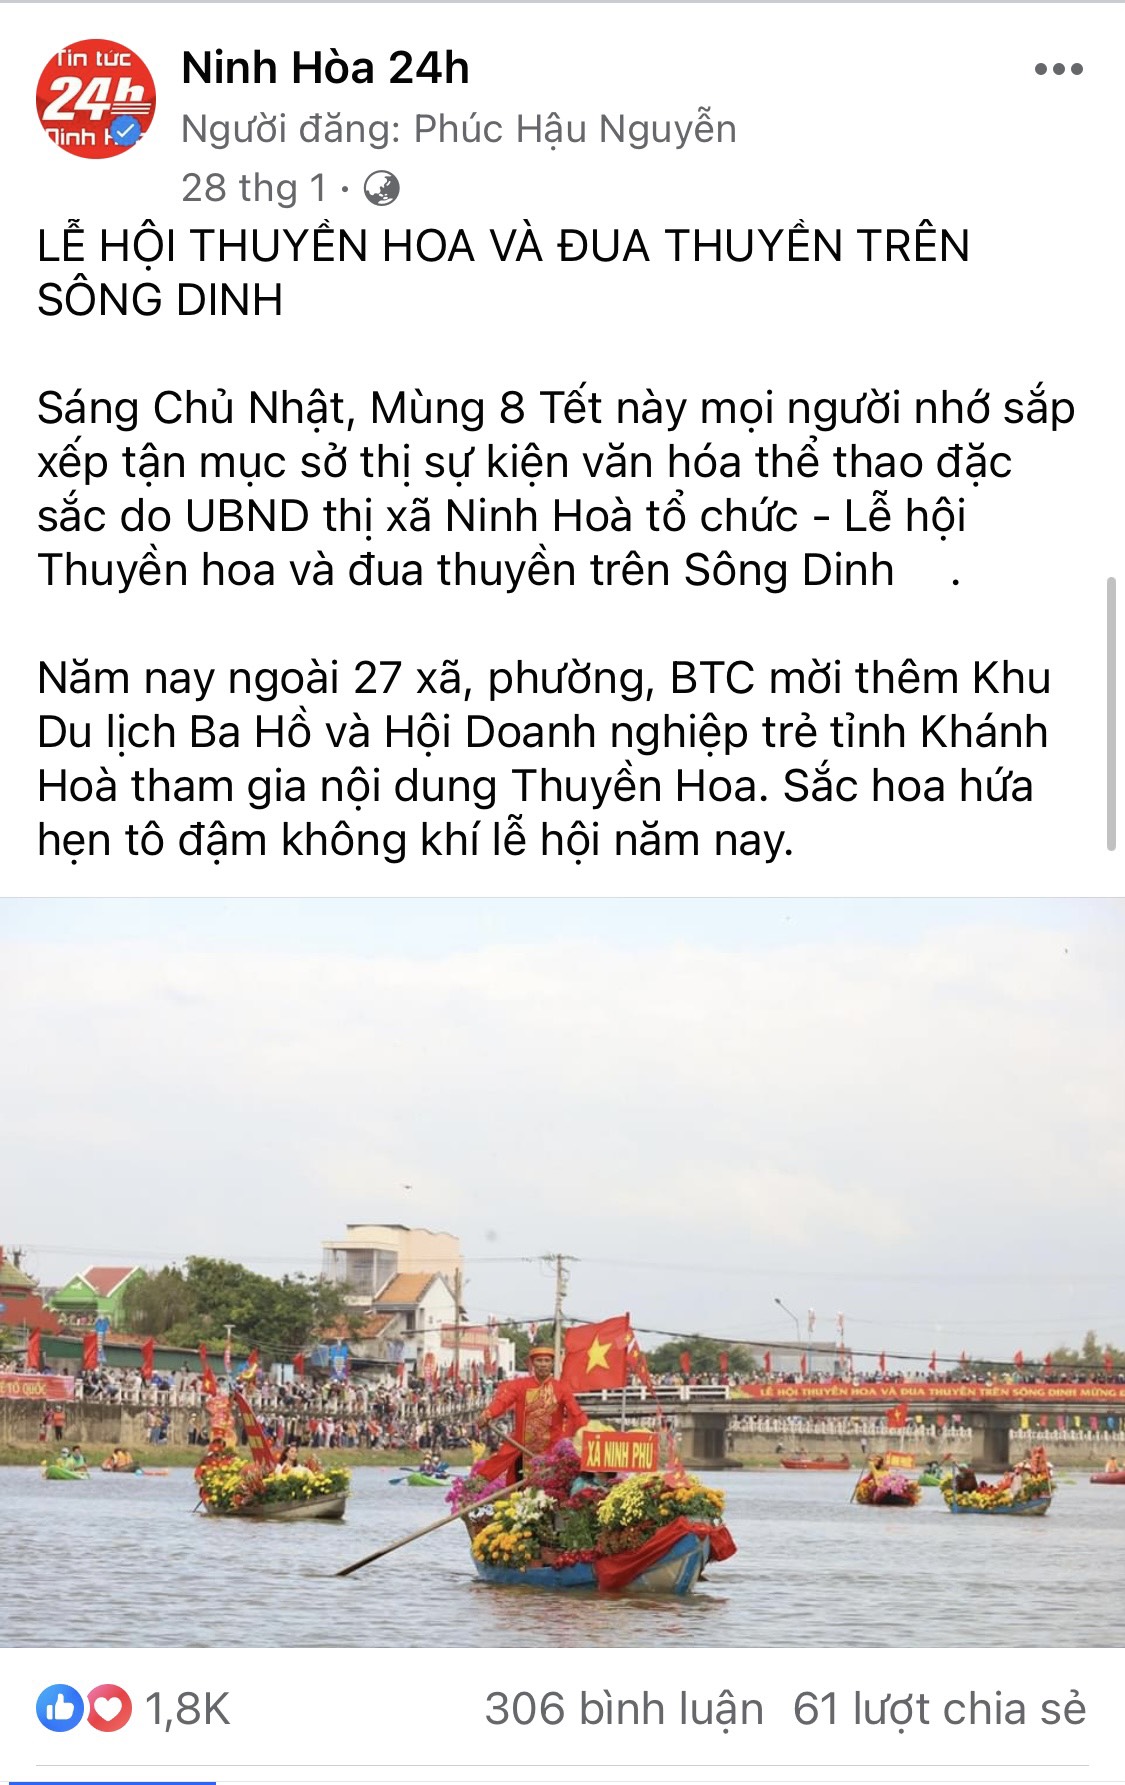 Bài đăng về Lễ hội đua thuyền trên sông Dinh của fanpage Ninh Hoà 24h vào dịp Tết Nguyên đán Quý Mão 2023 thu hút đông đảo người theo dõi.